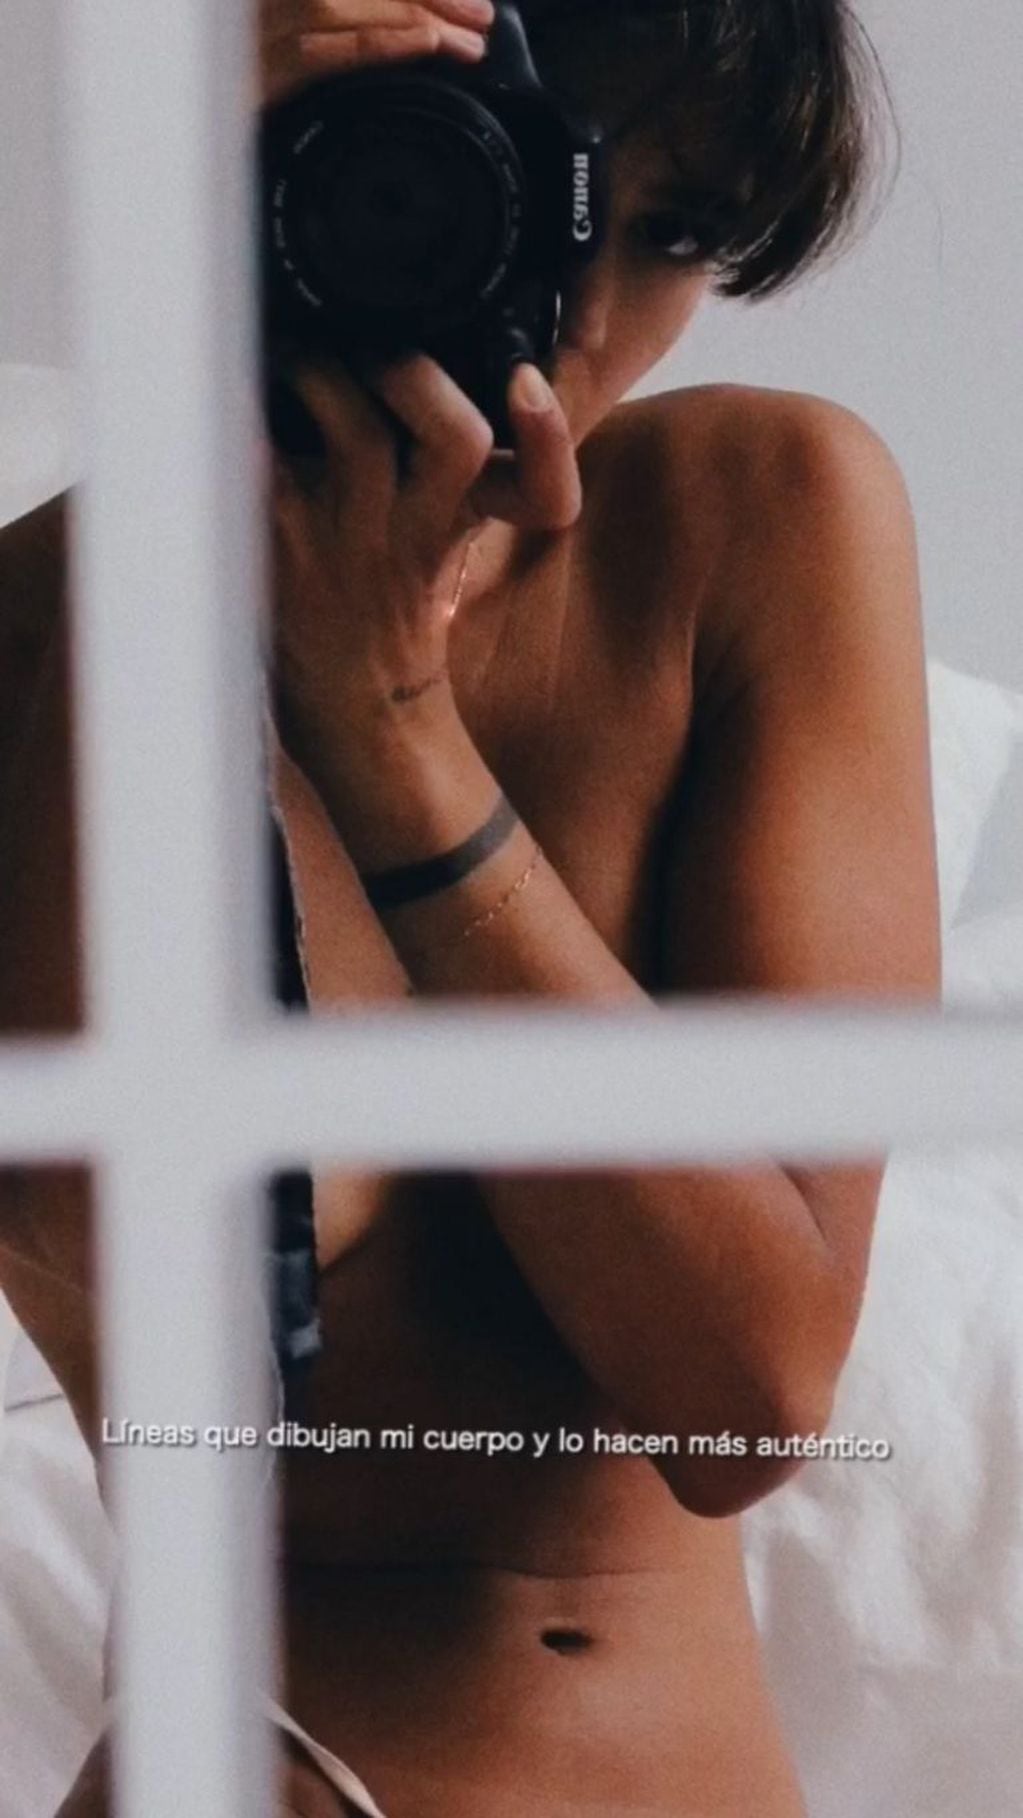 Calu Rivero posó desnuda frente a un espejo para mostrar su cuerpo real  (Instagram/ lacalurivero)